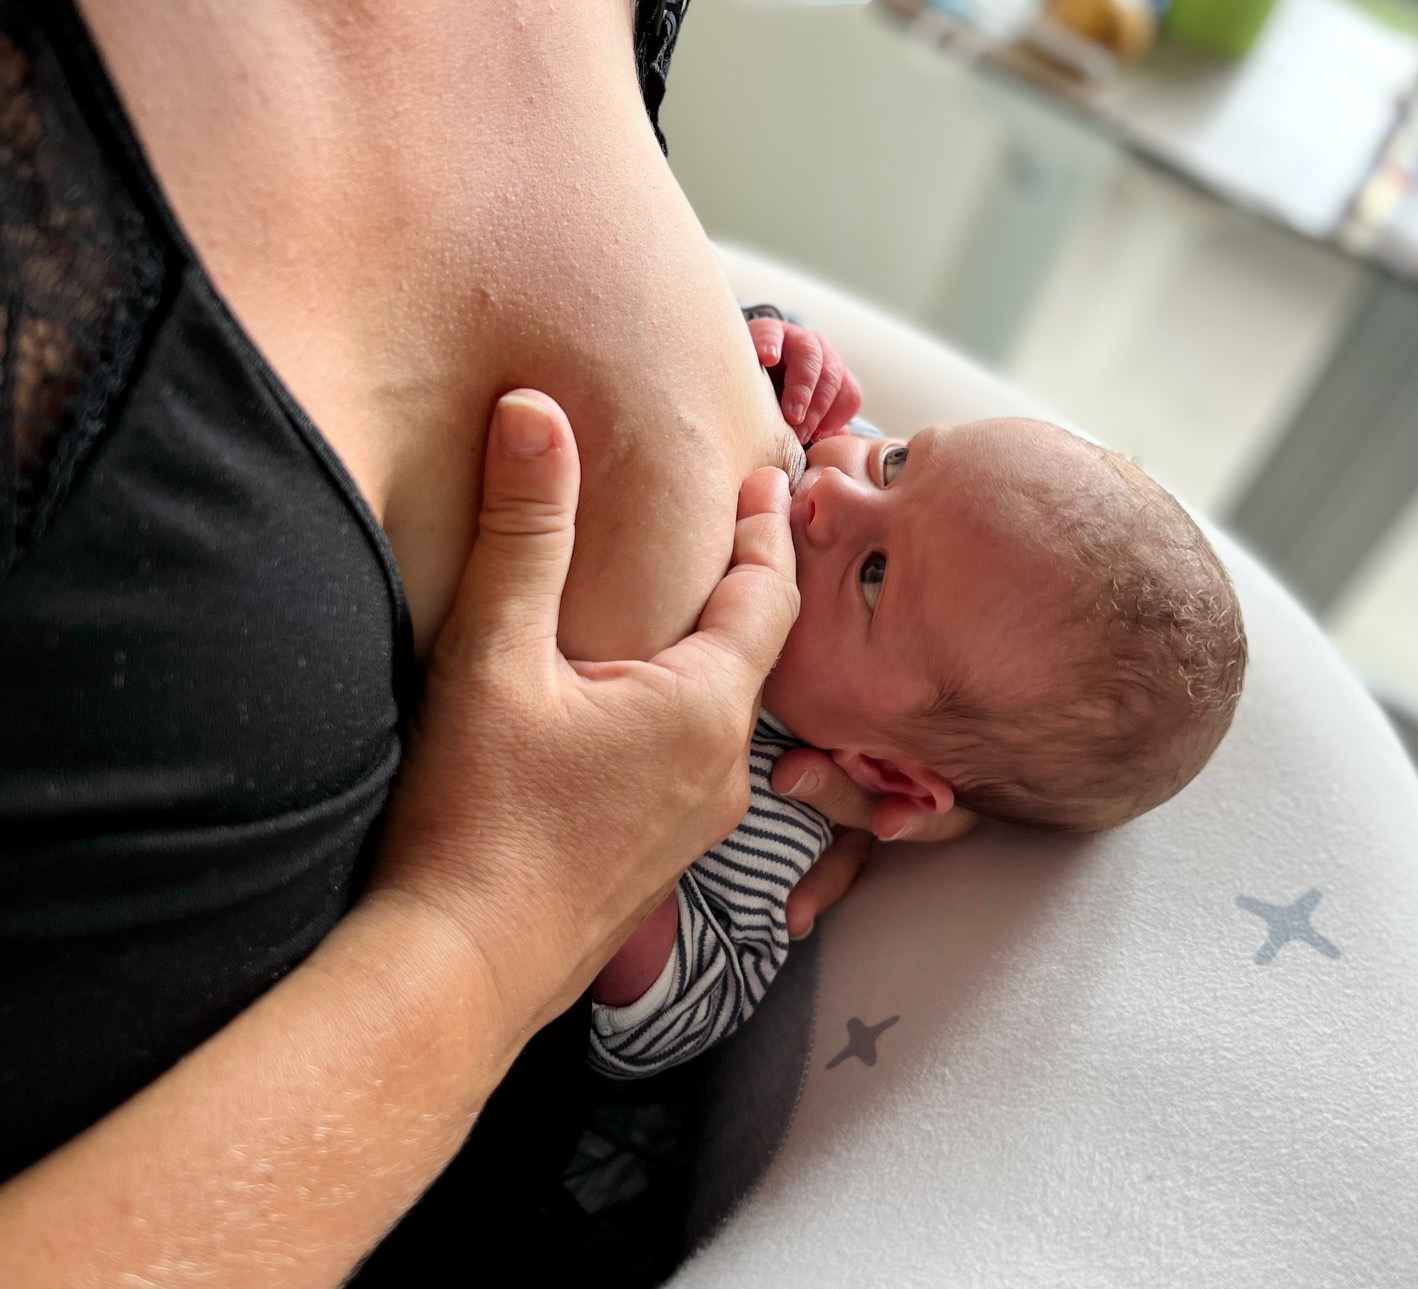 lait corps bébé – Maman surmenée mais comblée, le blog